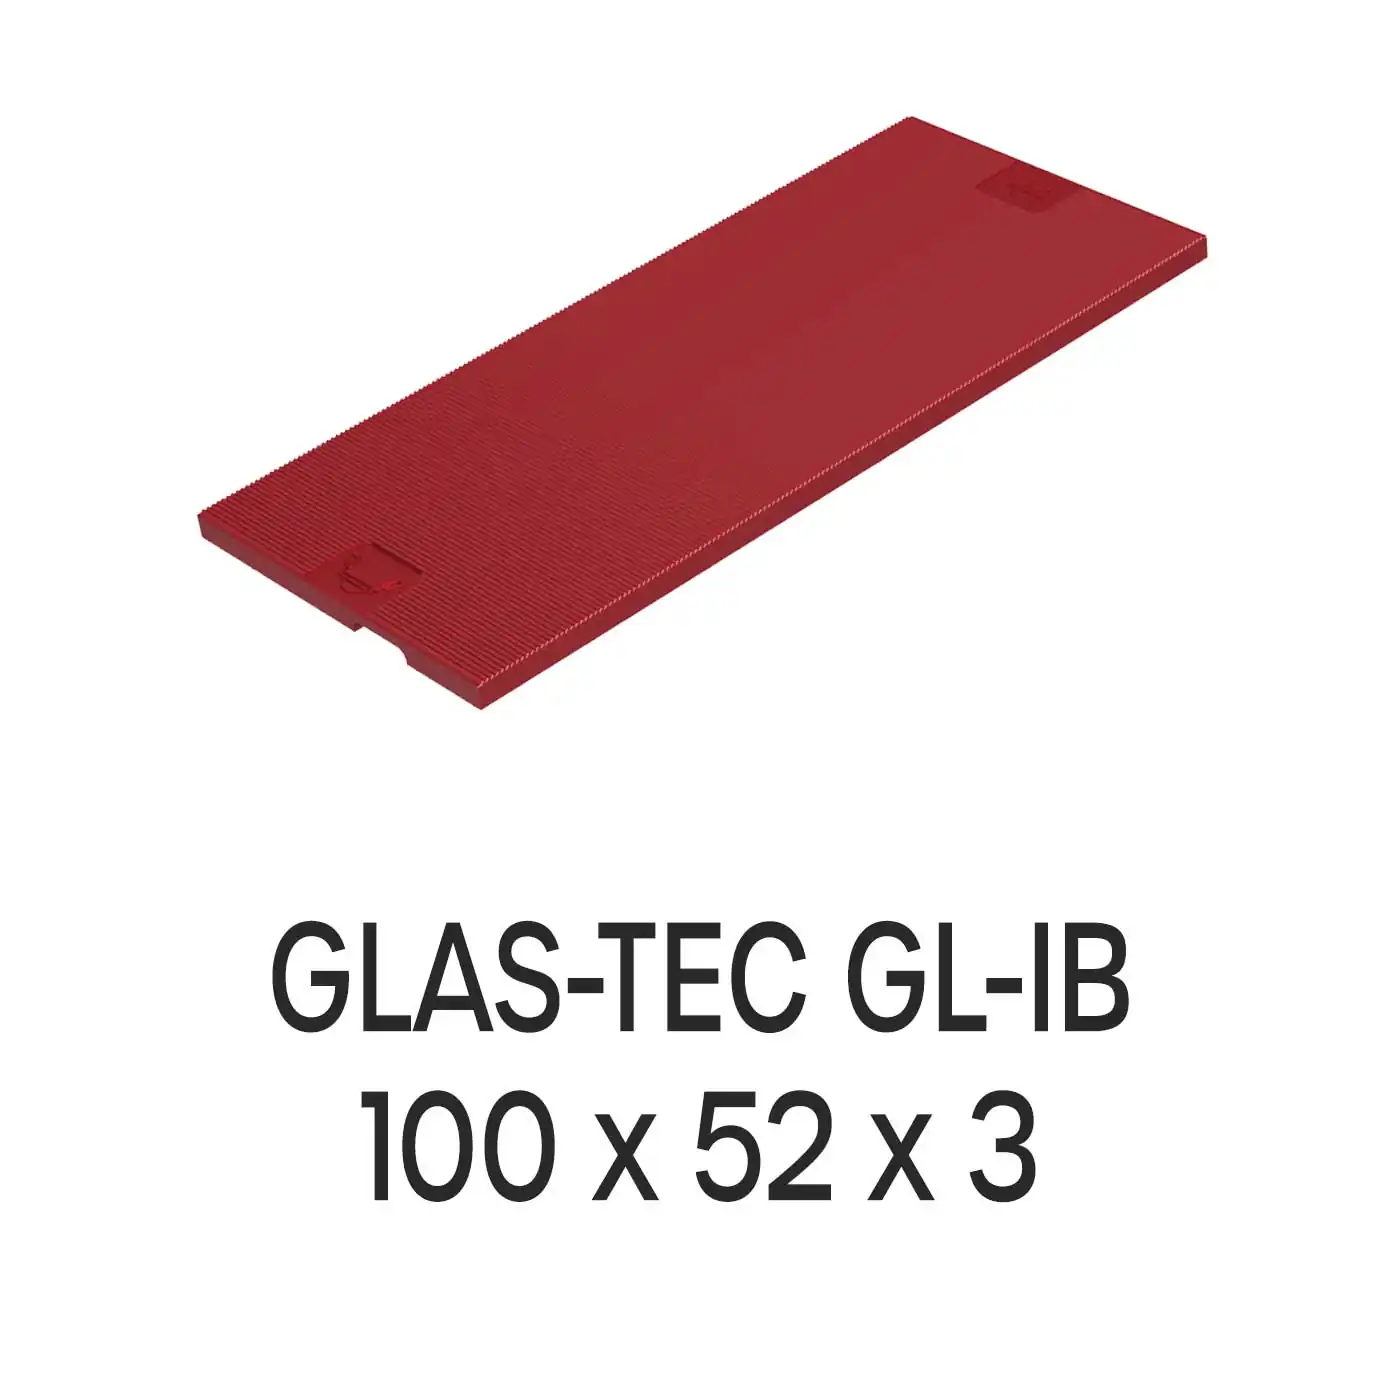 Roto Verglasungsklotz GLAS-TEC GL-IB, 100 x 52 x 3 mm, schwarz, 500 Stück